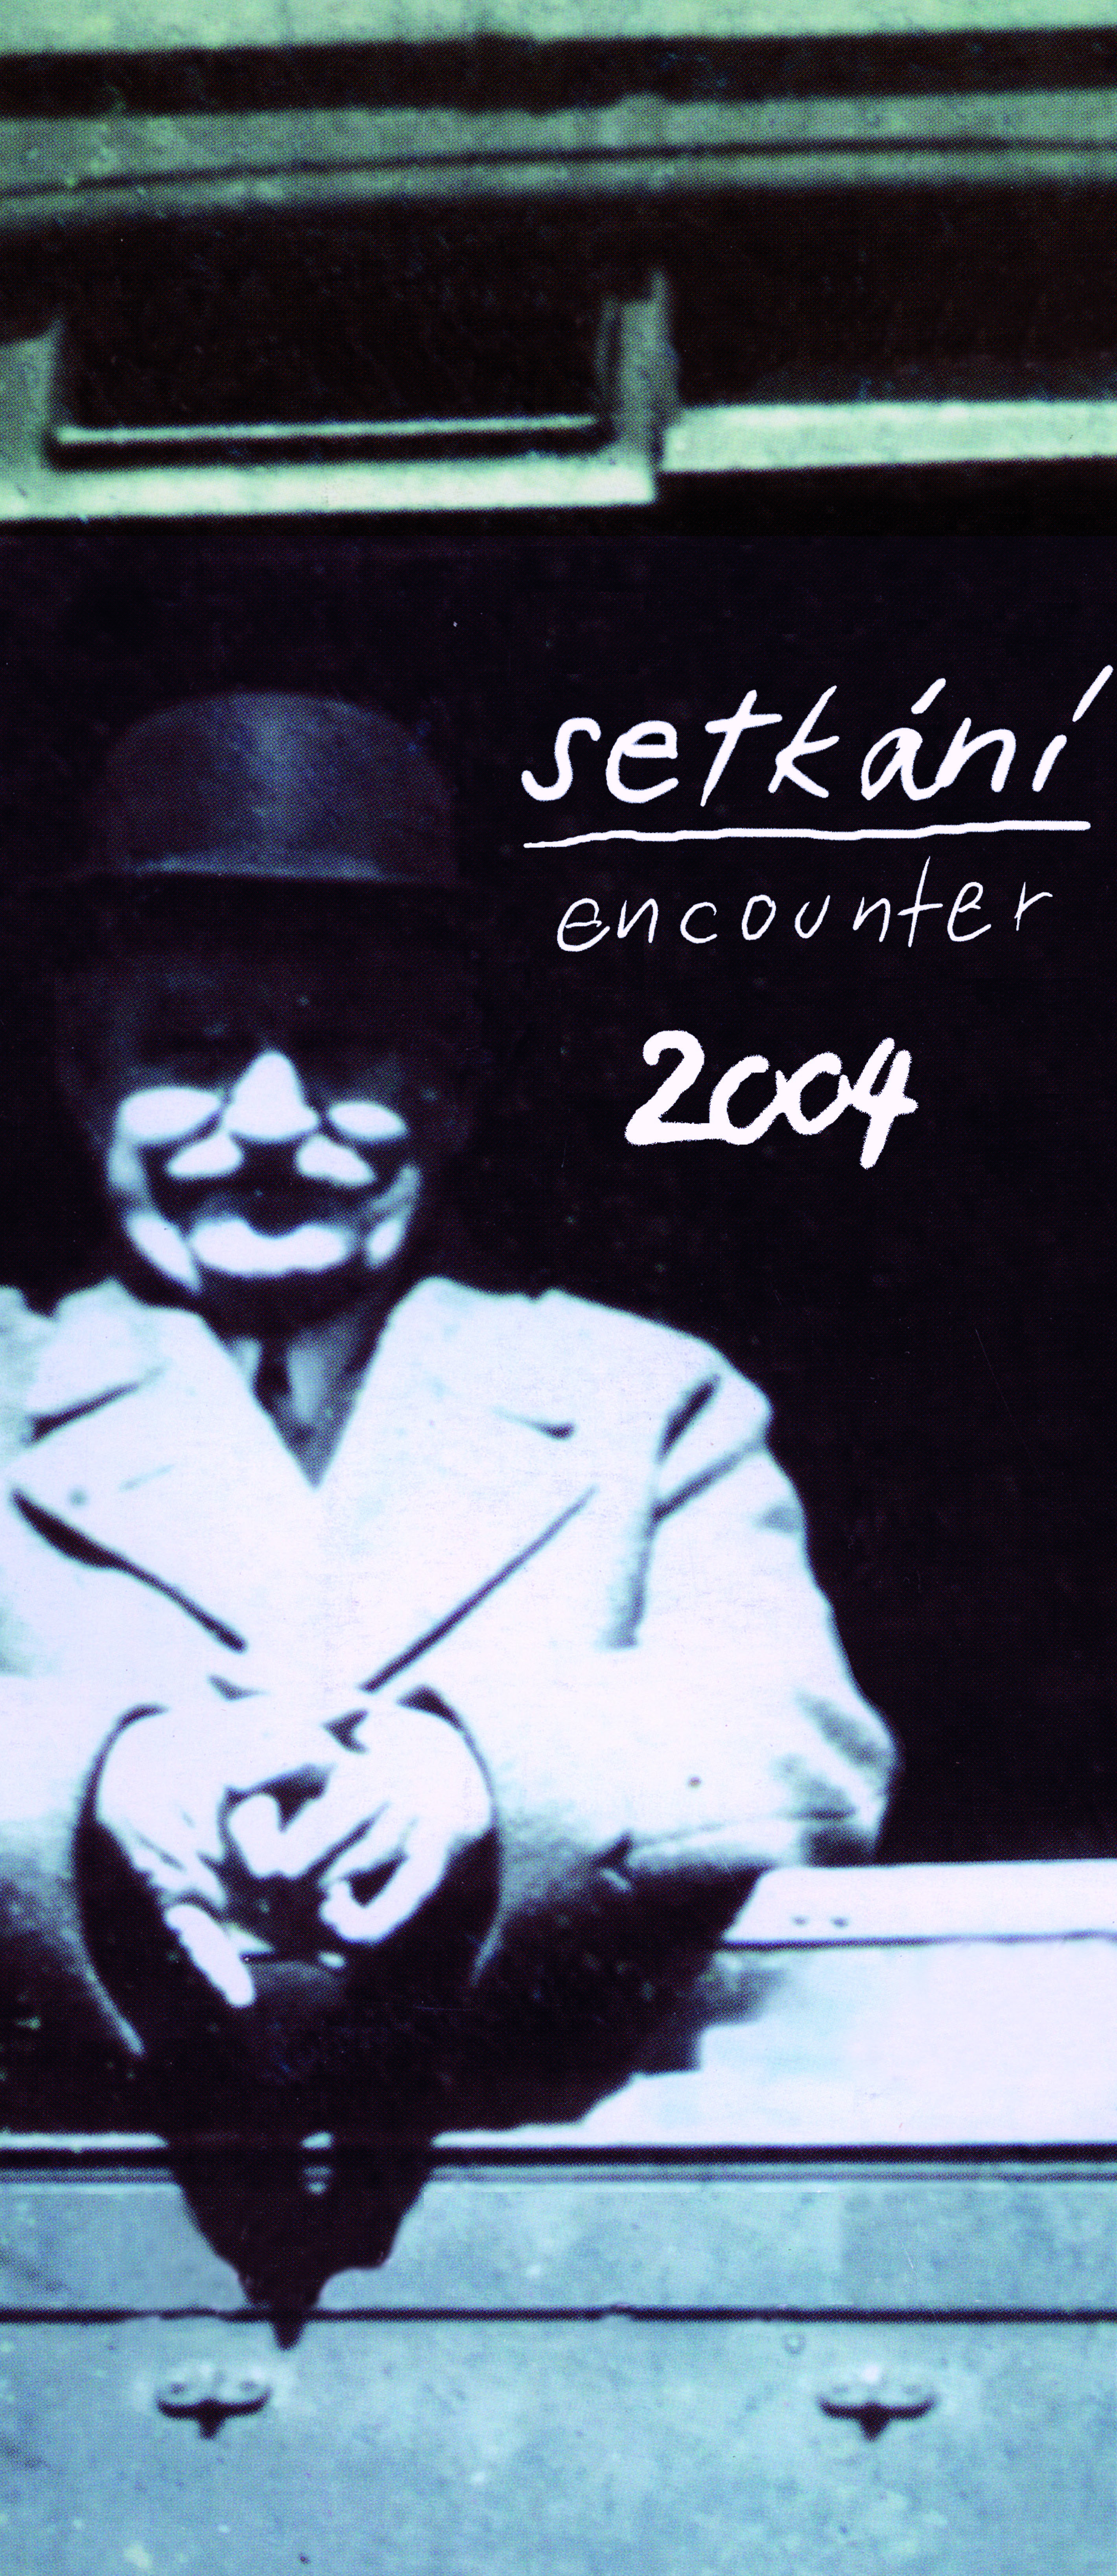 plakát ročníku 2004